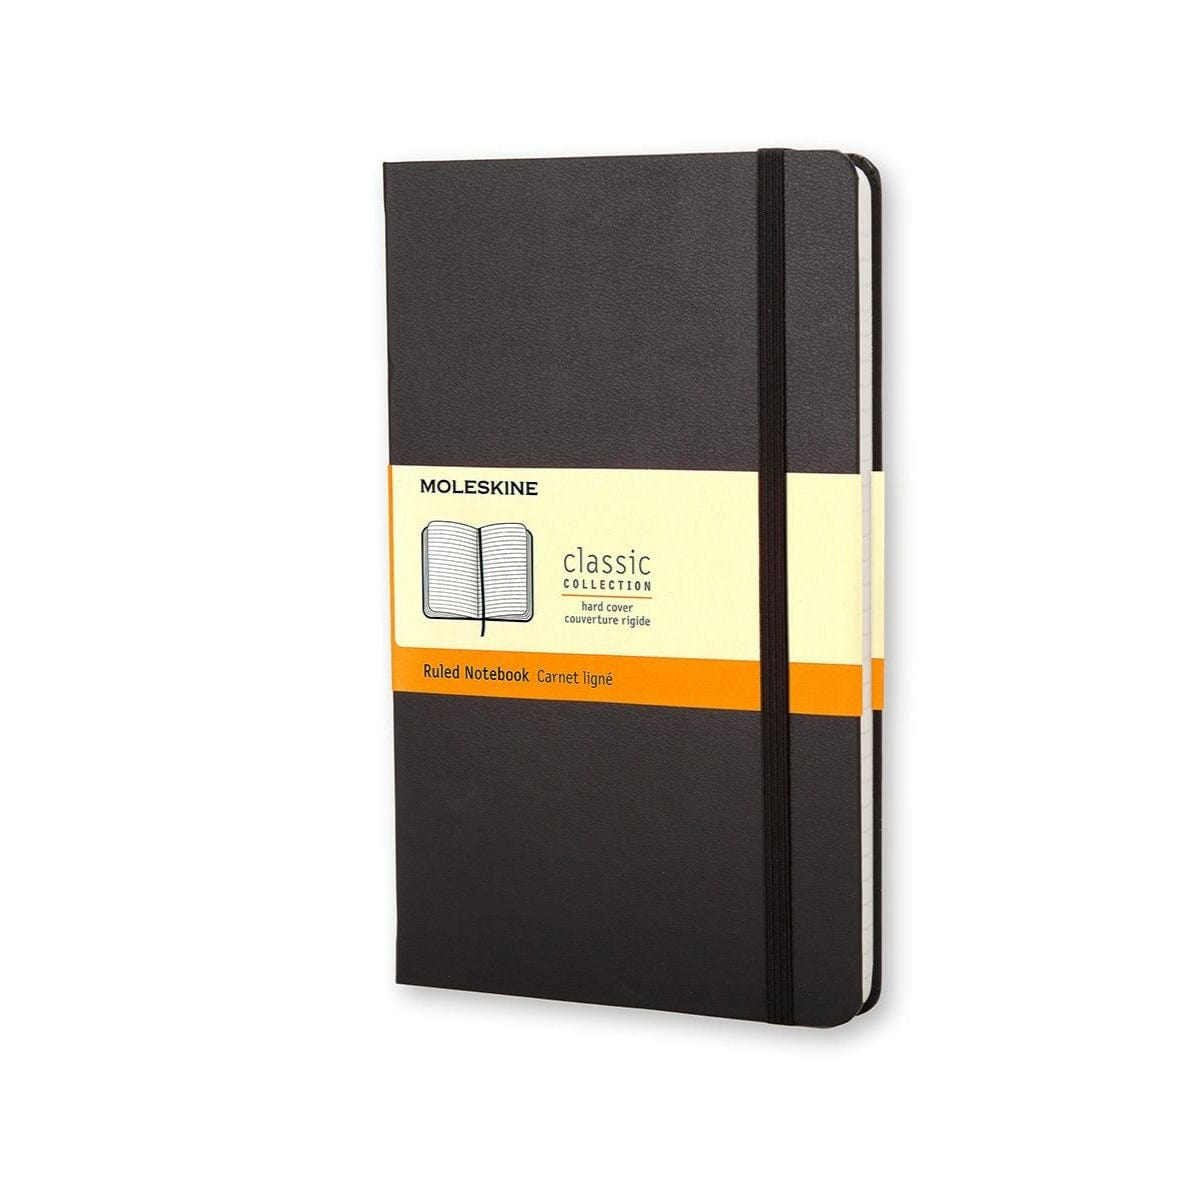 Moleskine Notebook Pocket Ruled Black Hard Cover